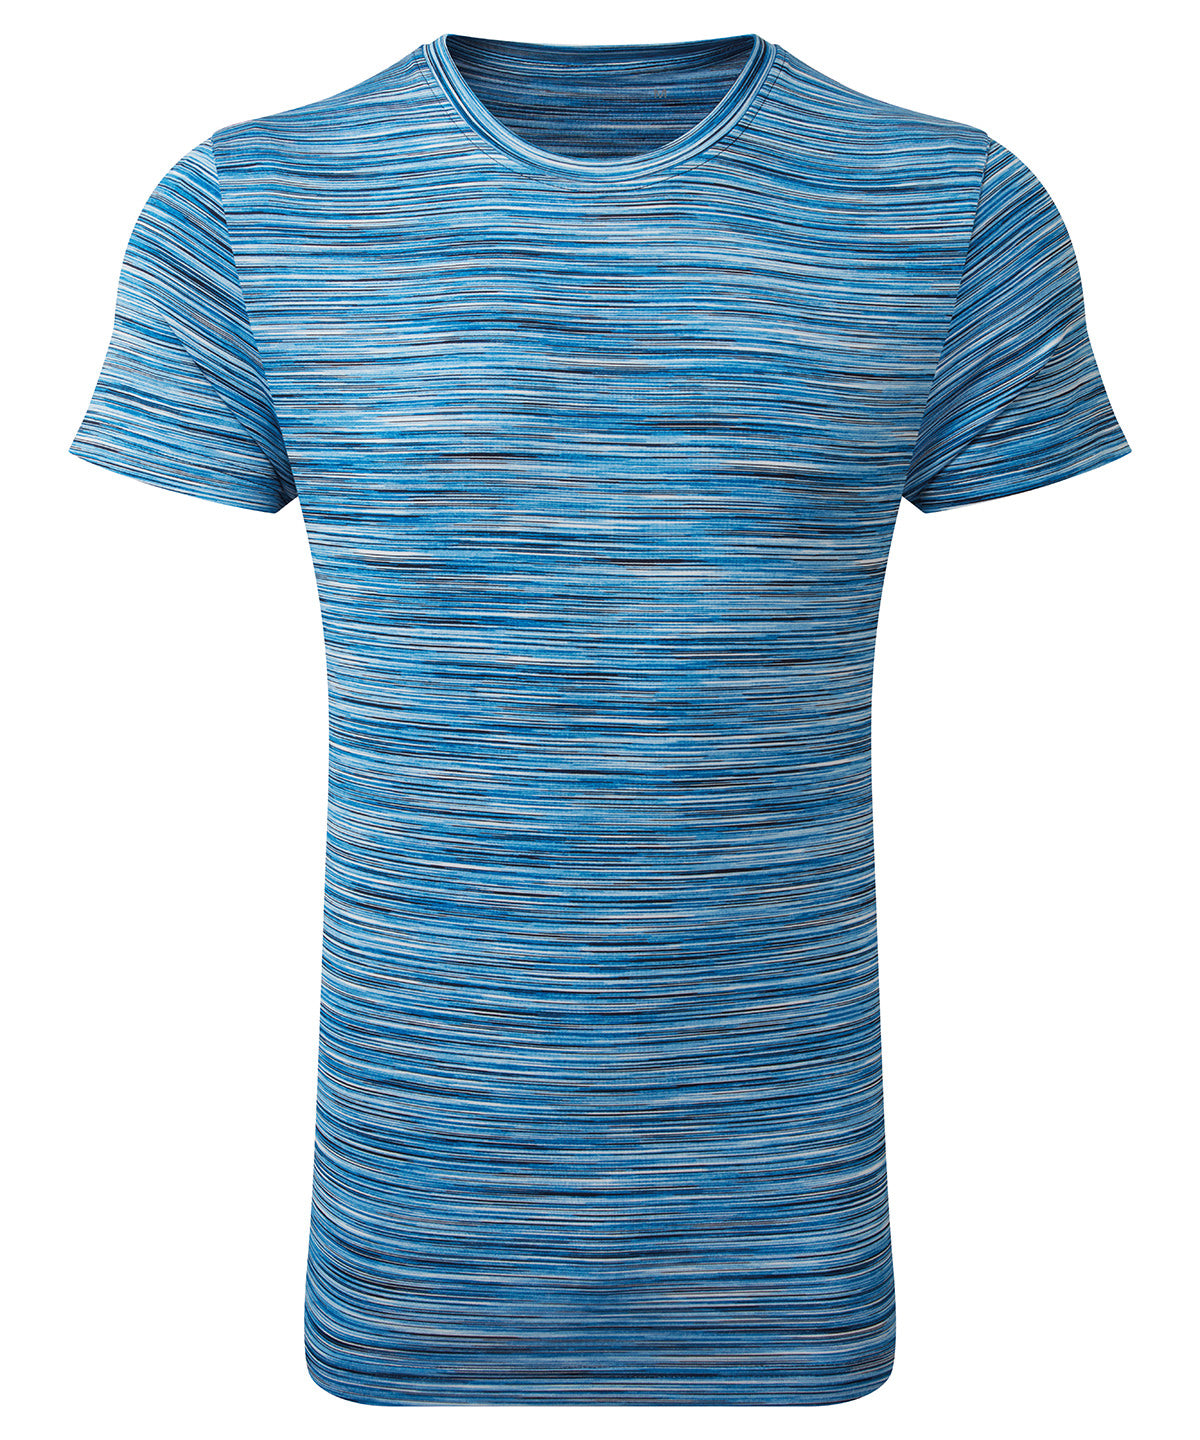 TriDri® space dye performance t-shirt